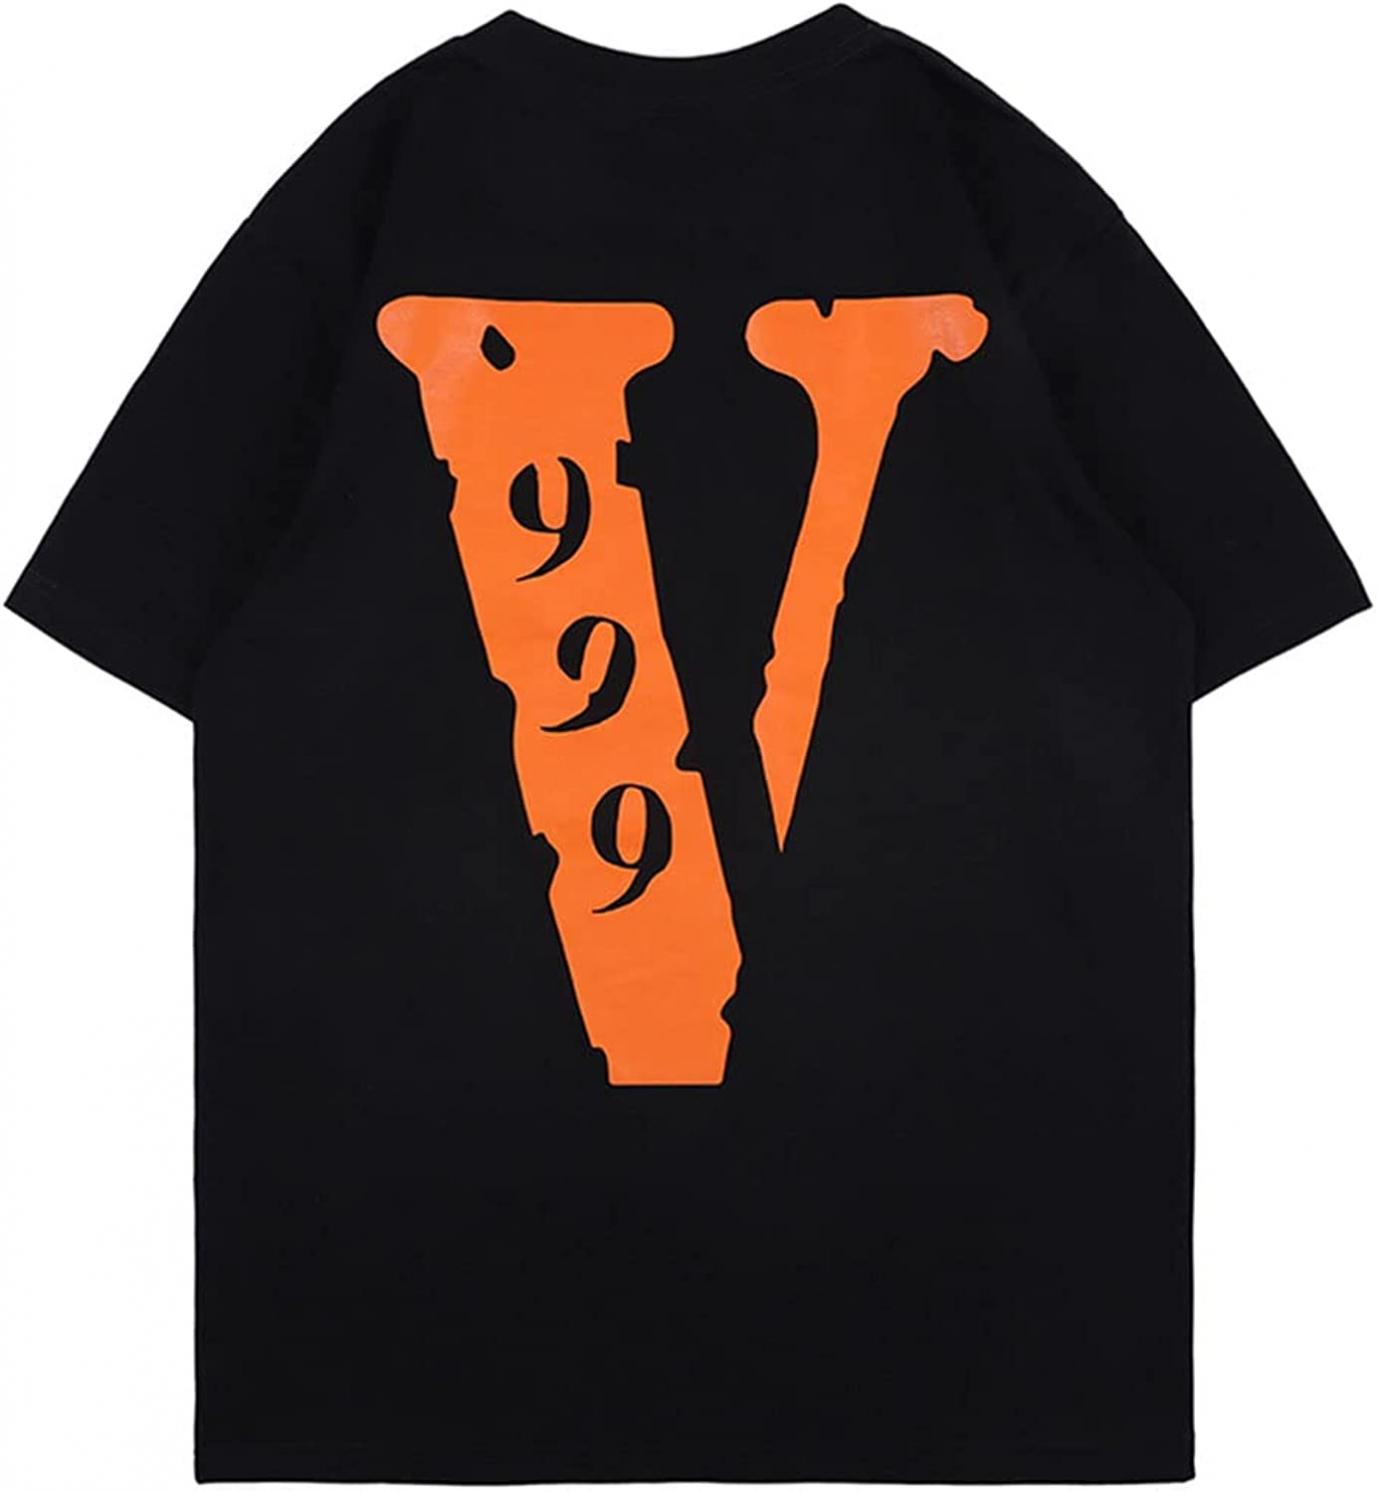 cpfm.xyz Men's Big V Letter Print Pattern Hip Hop T Shirt Cotton for Men Women